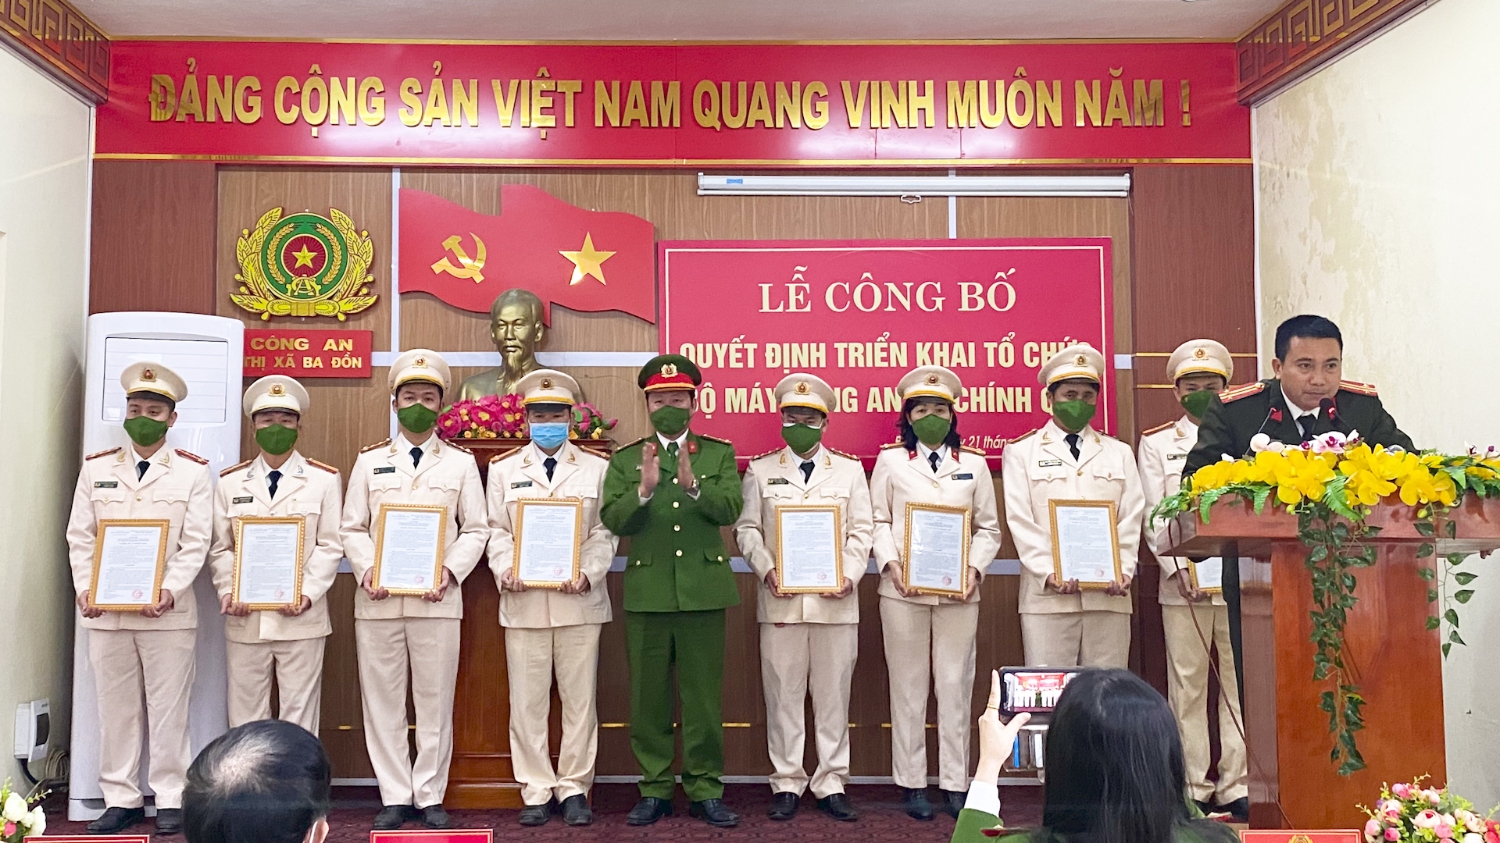 Thượng tá Nguyễn Vũ Cương UVTV Thị ủy, Trưởng Công an thị xã đã trao quyết định và chúc mừng Công an các xã được nhận quyết định